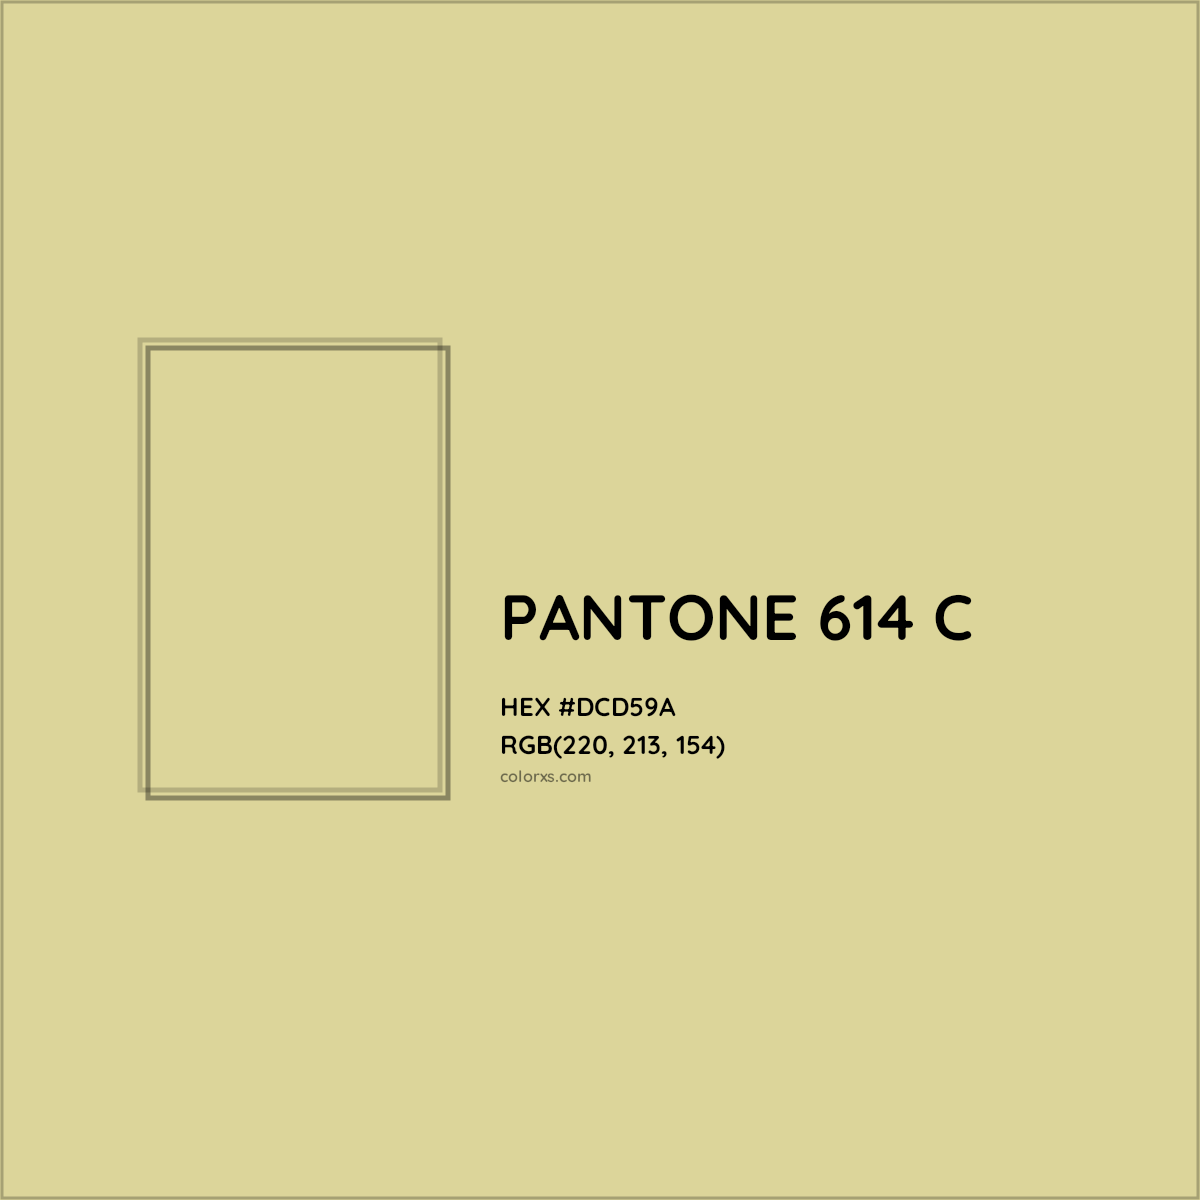 HEX #DCD59A PANTONE 614 C CMS Pantone PMS - Color Code